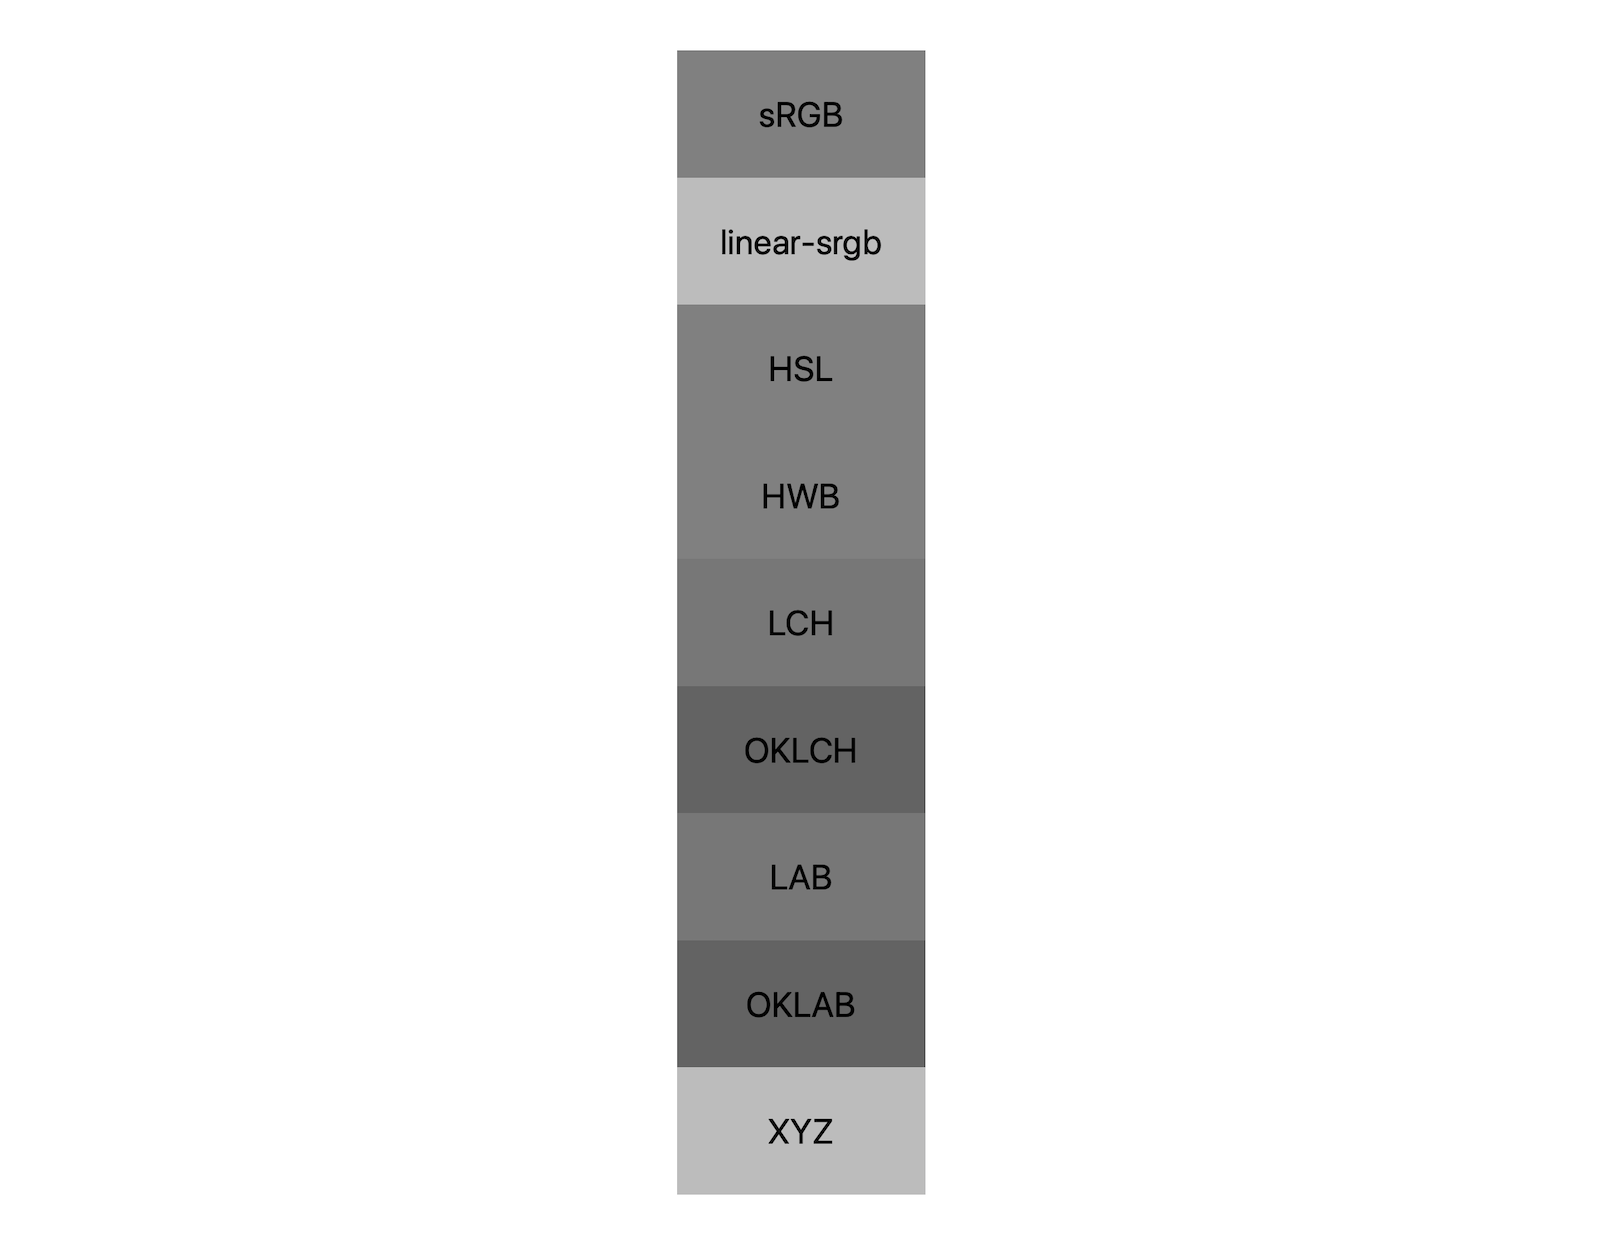 Каждое из 7 цветовых пространств (srgb, linear-srgb, lch, oklch, lab, oklab, xyz) показывает свои результаты смешивания черного и белого. Показаны примерно 5 различных оттенков, демонстрируя, что каждое цветовое пространство по-разному смешивается с серым.